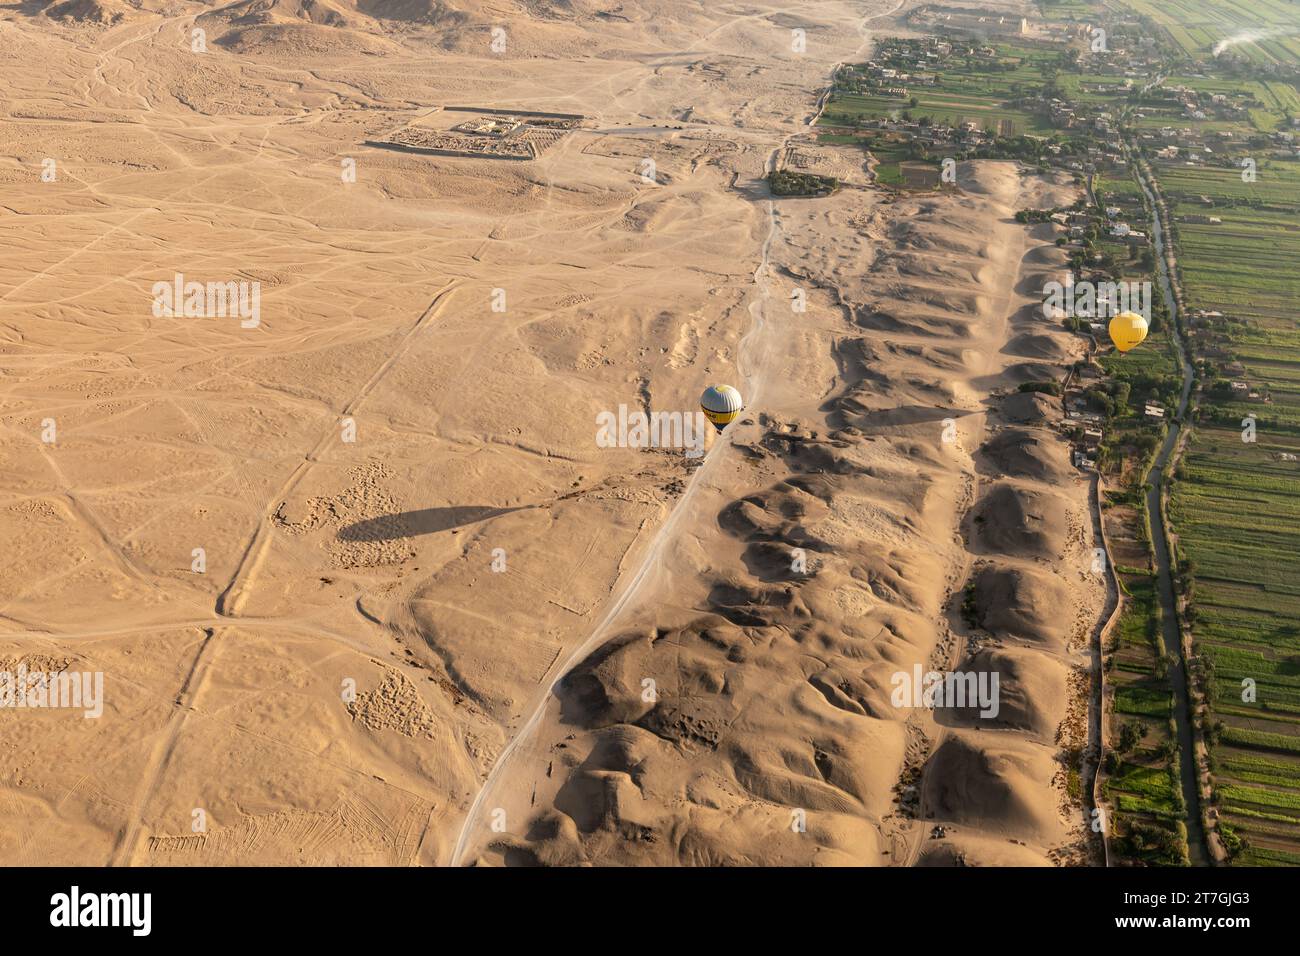 Vue aérienne de la montgolfière au-dessus de la rangée de tombeau pyramidal antique reste sur le bord du désert et des champs fertiles de la vallée du Nil Banque D'Images